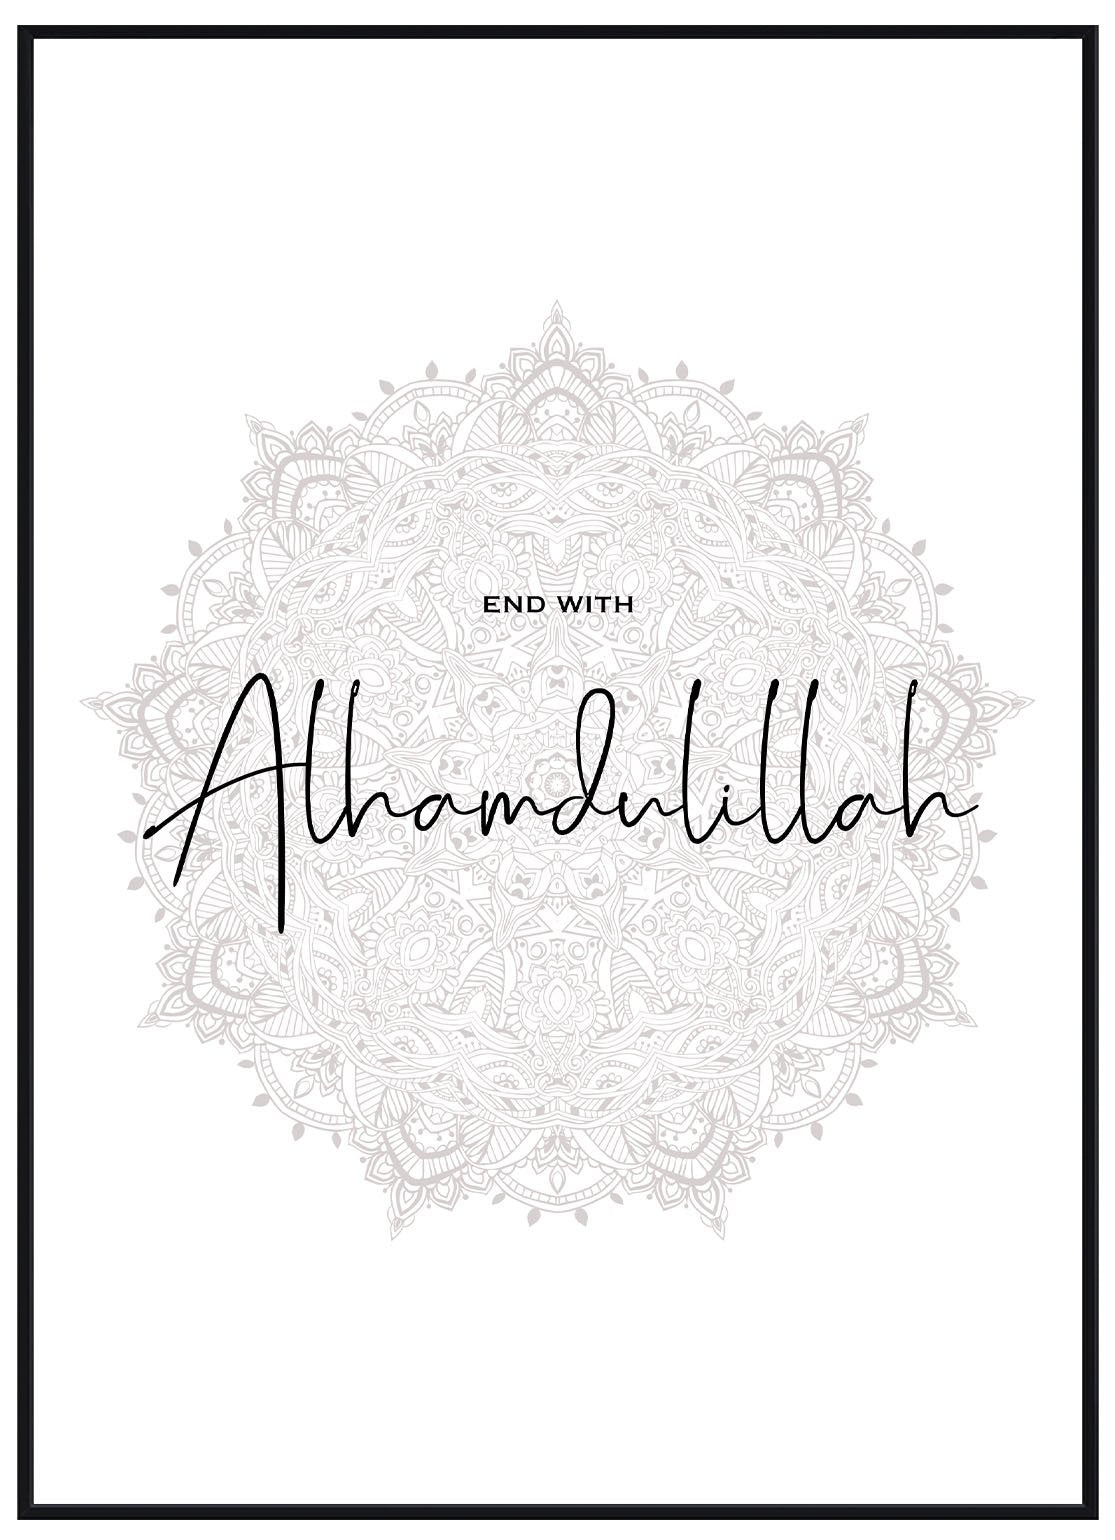 Alhamdulillah - Avemfactory